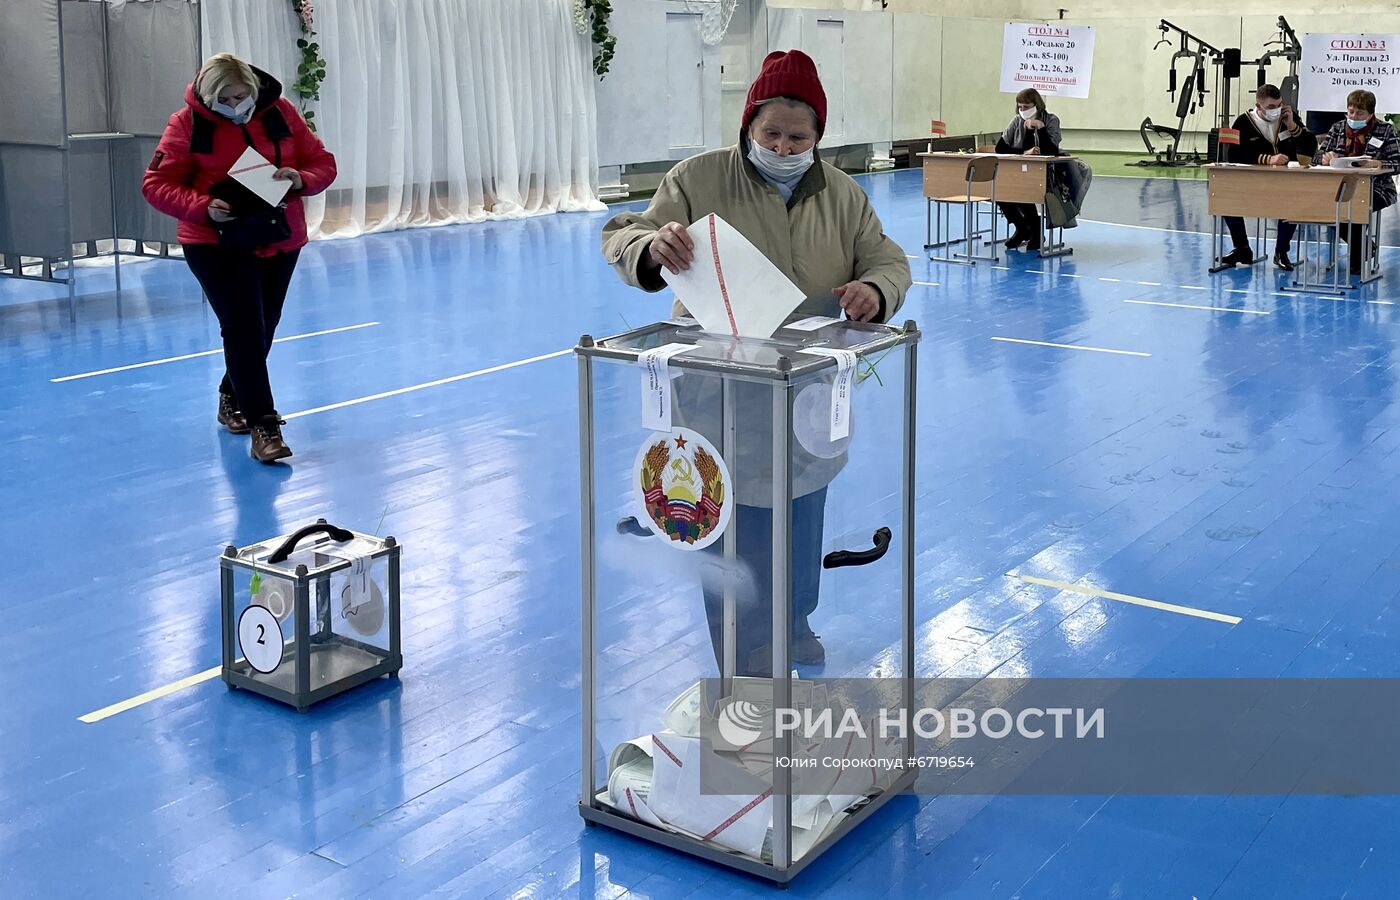 Президентские выборы в Приднестровье